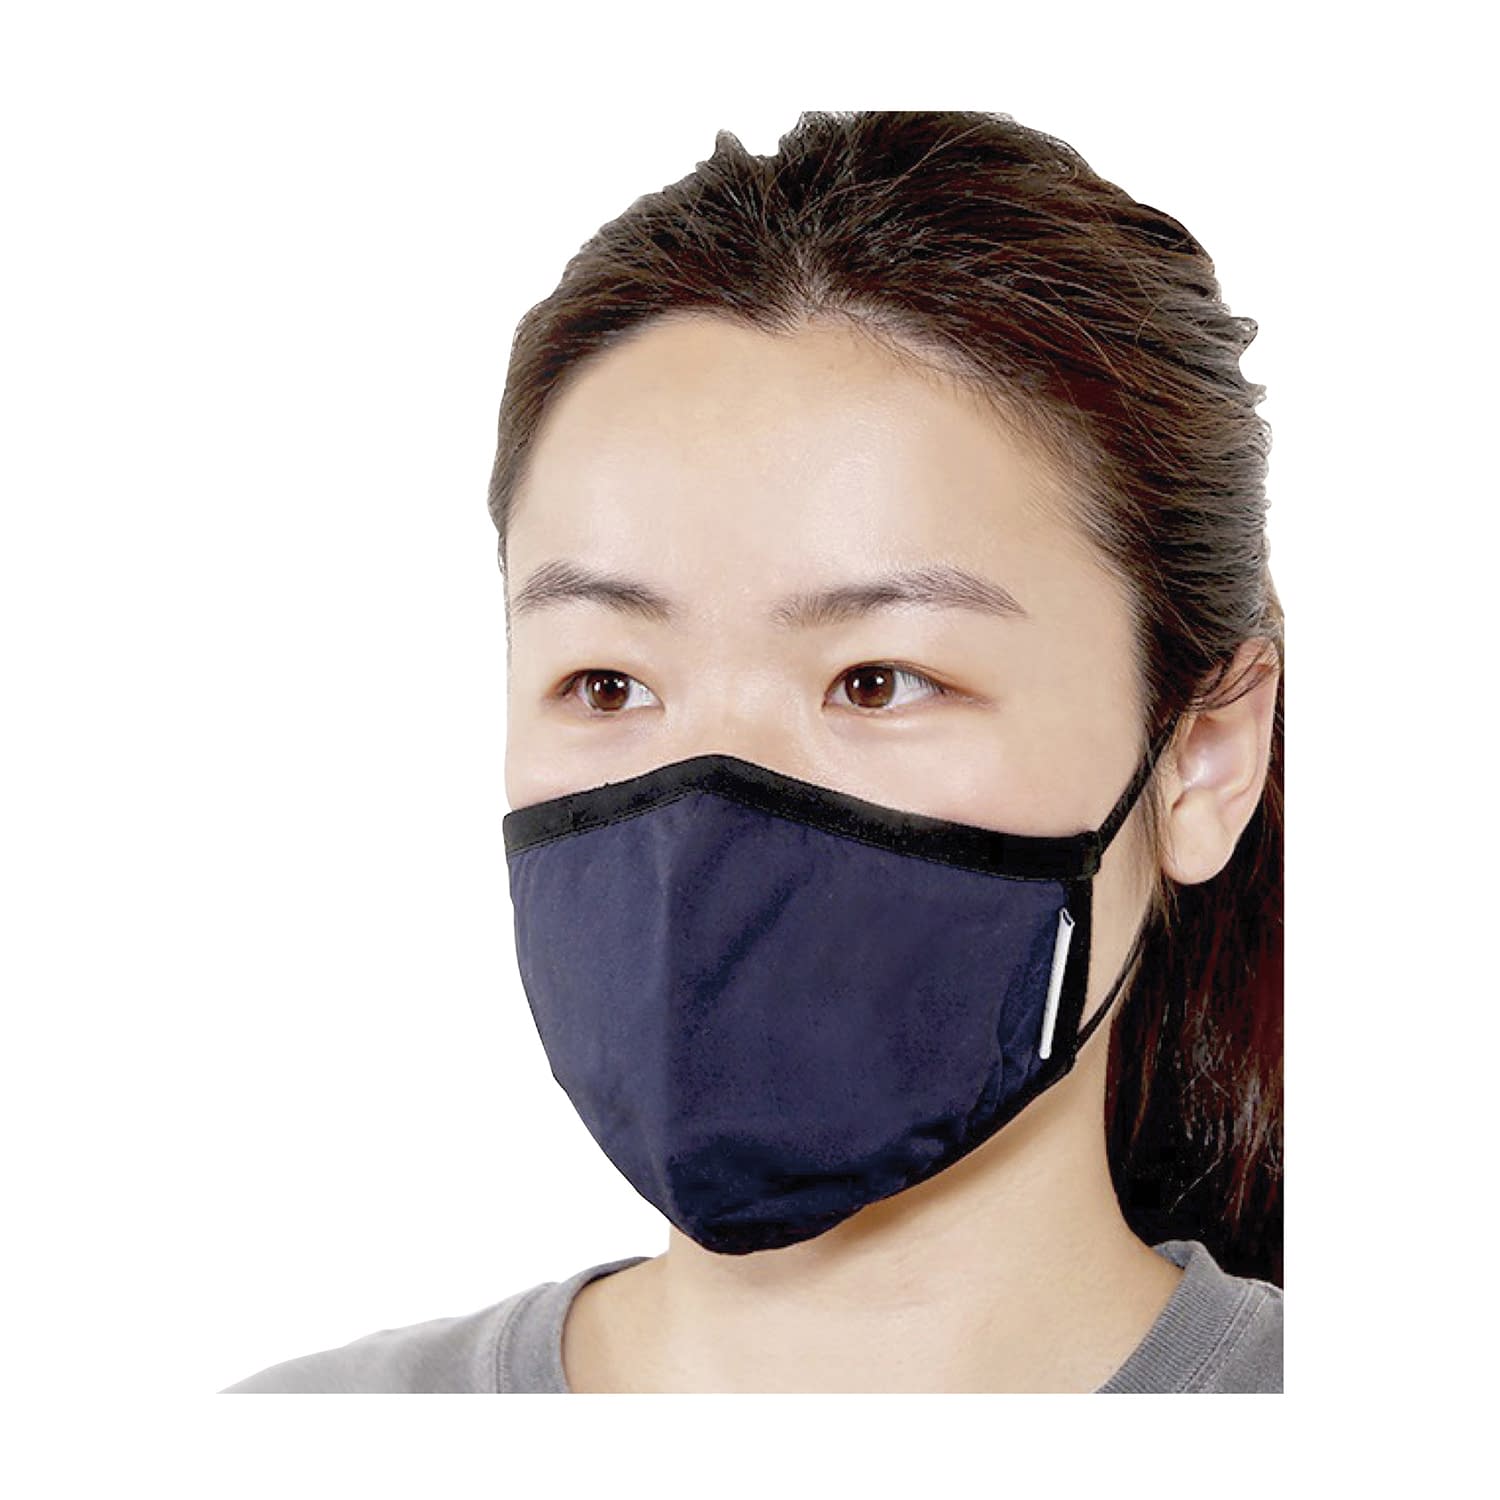 アンチウイルスマスク通気口なしLサイズ【GSIクレオス】(LAVM-NL)(24-9255-01)